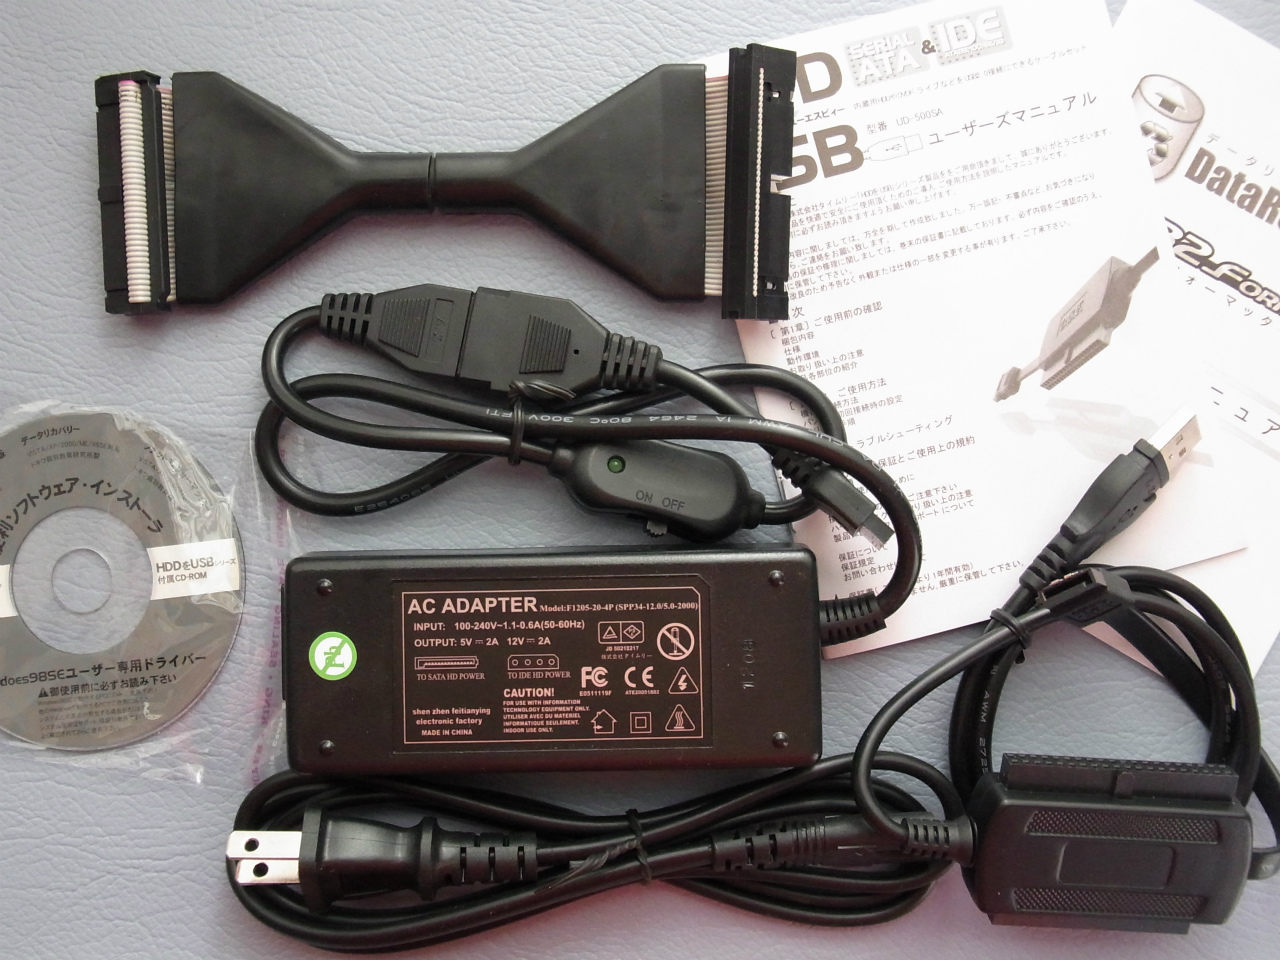 654円 【数量限定】 Groovy UD-500SA IDE SATA → USB2.0 変換アダプタ